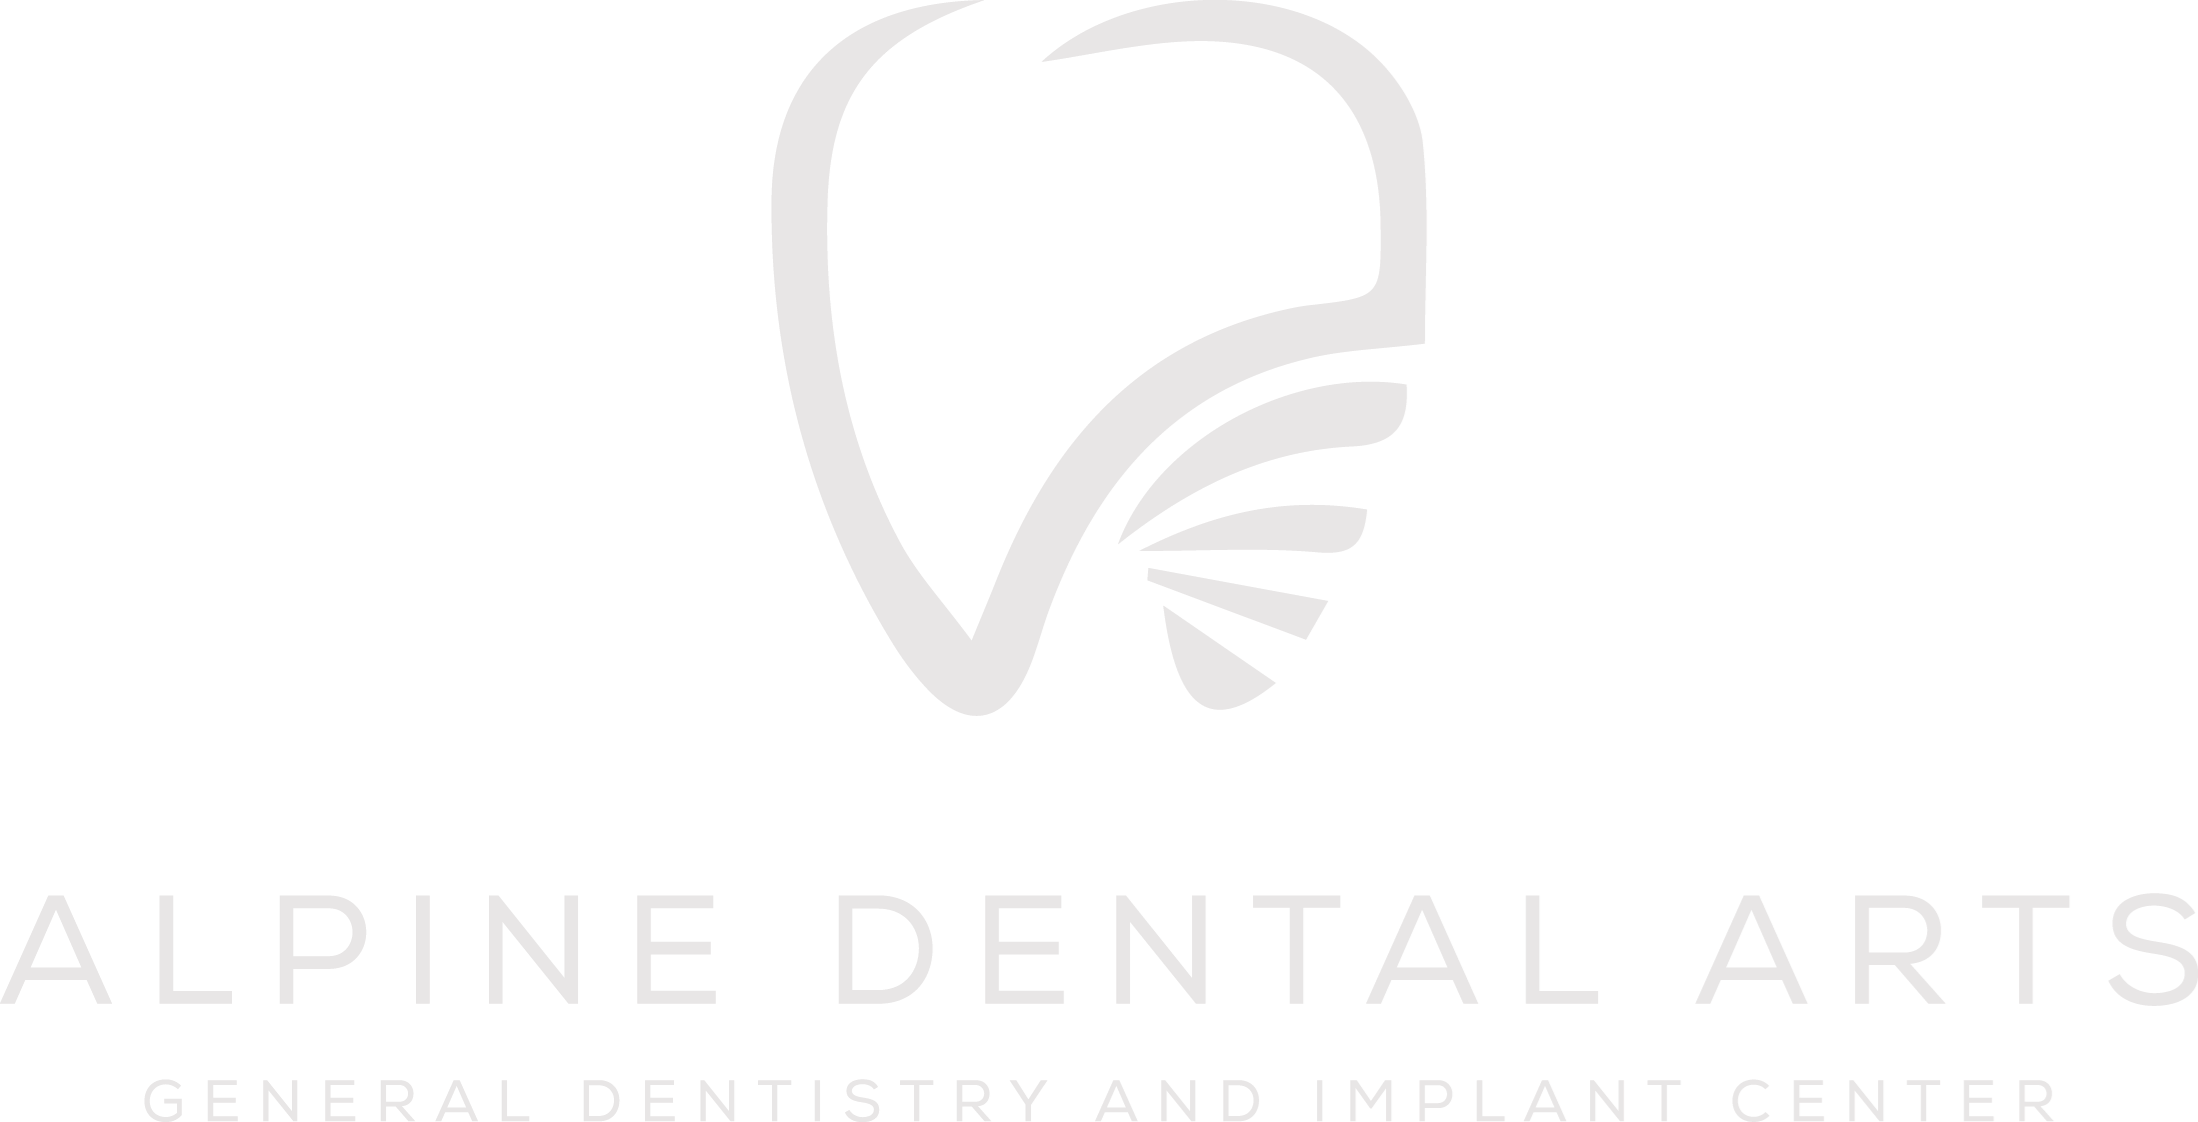 Alpine Dental Arts Logo - Illustration (2198x1122), Png Download